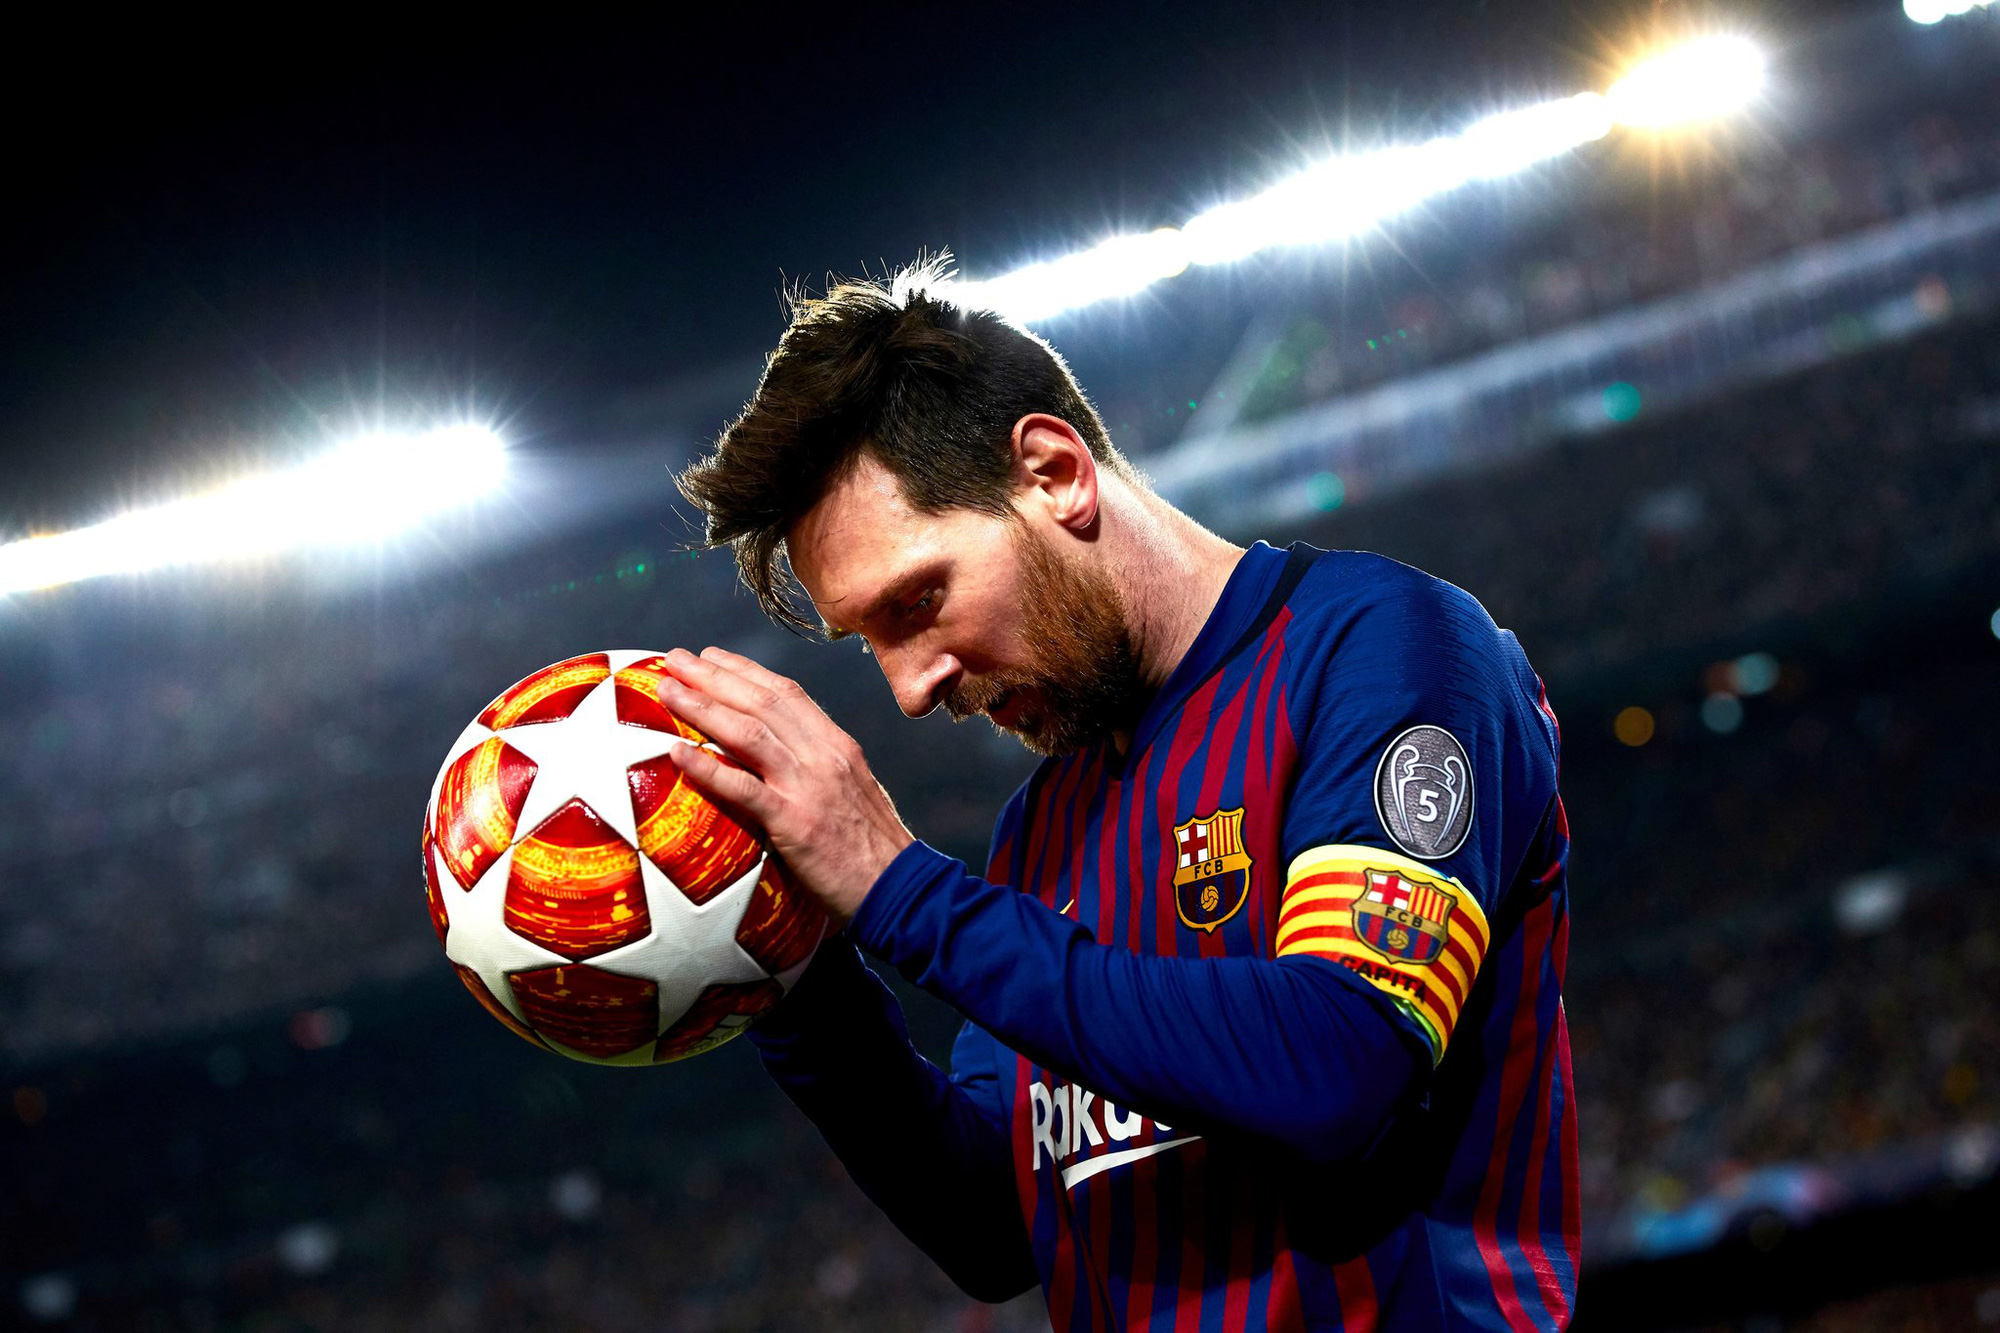 Chuyển nhượng 19/7: Barca khó đăng ký Messi thi đấu - Ảnh 2.